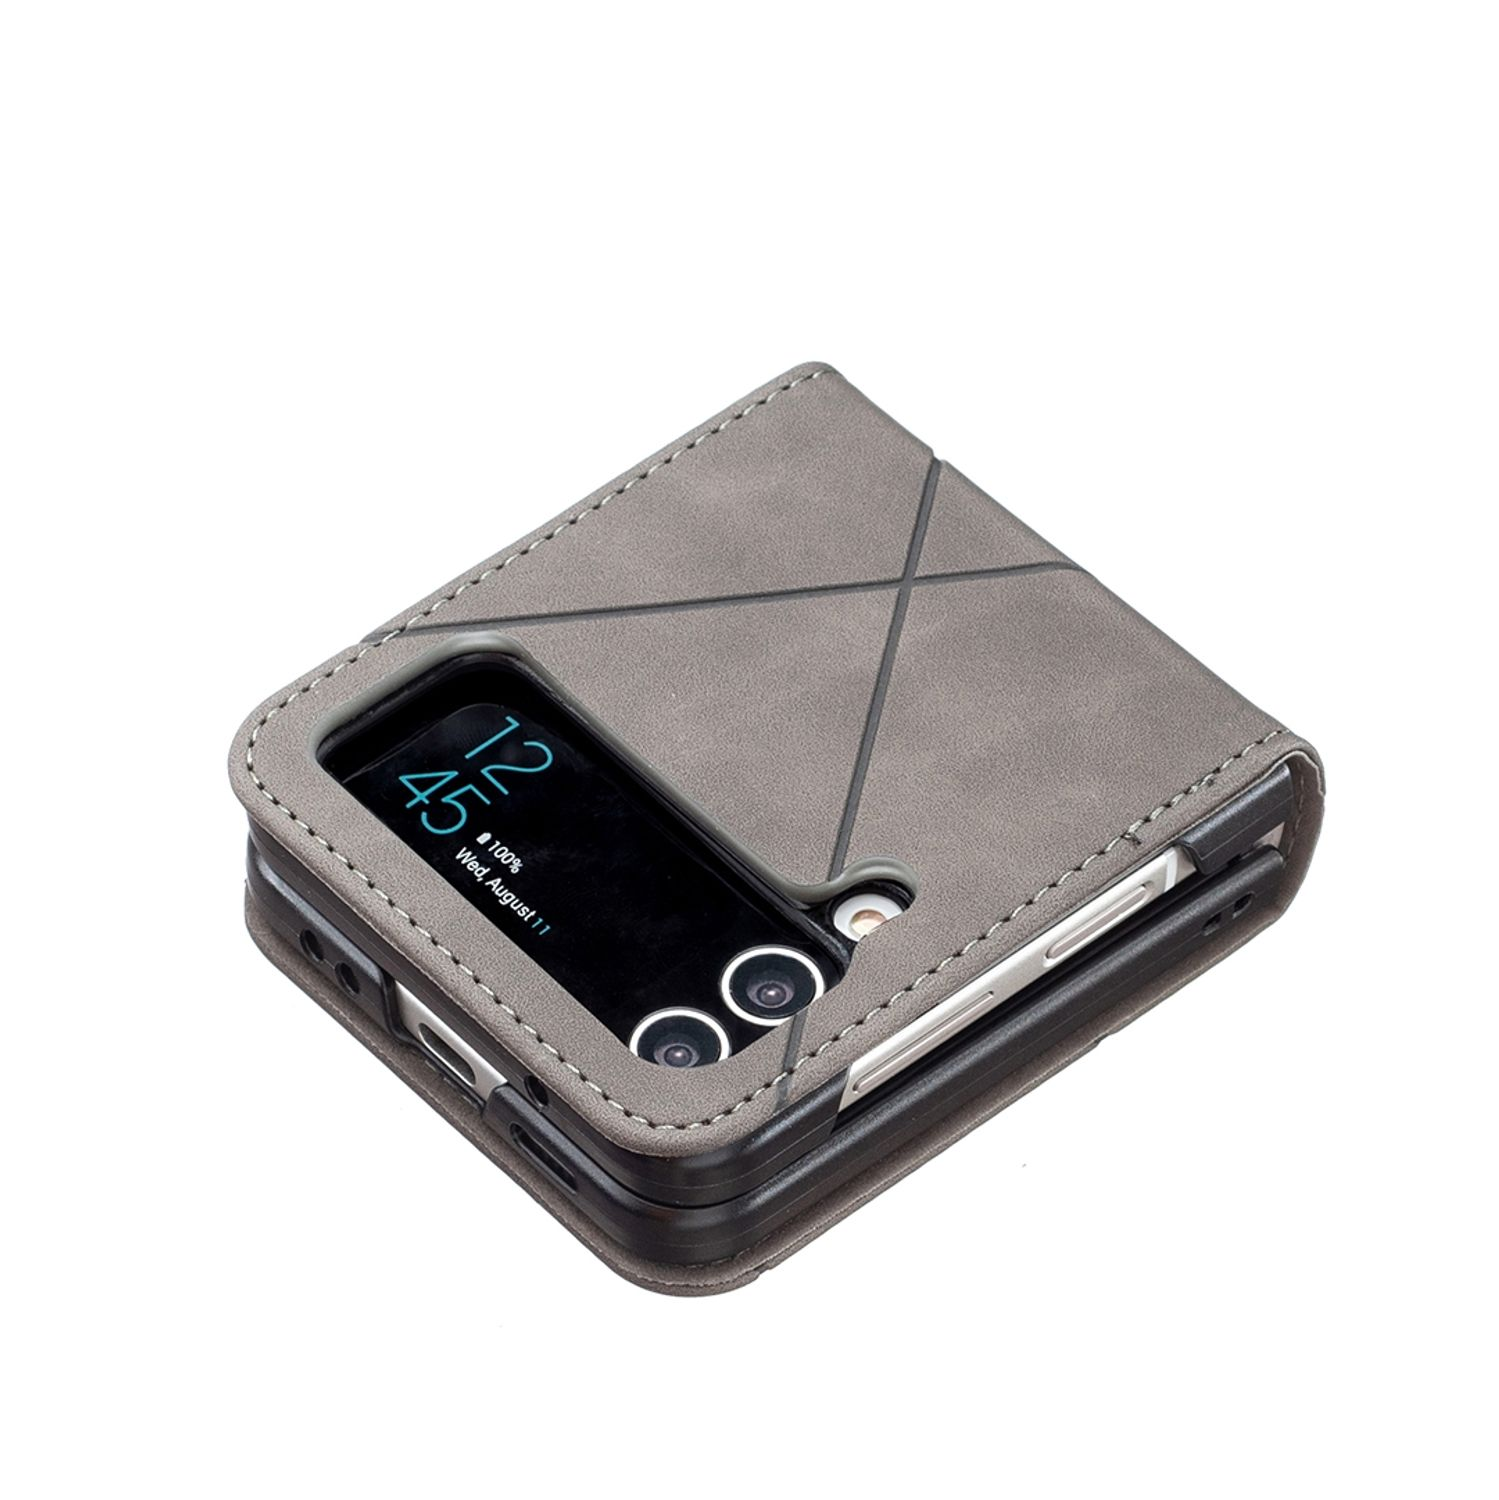 5G, KÖNIG Backcover, Galaxy Z Flip4 Grau Case, DESIGN Samsung,